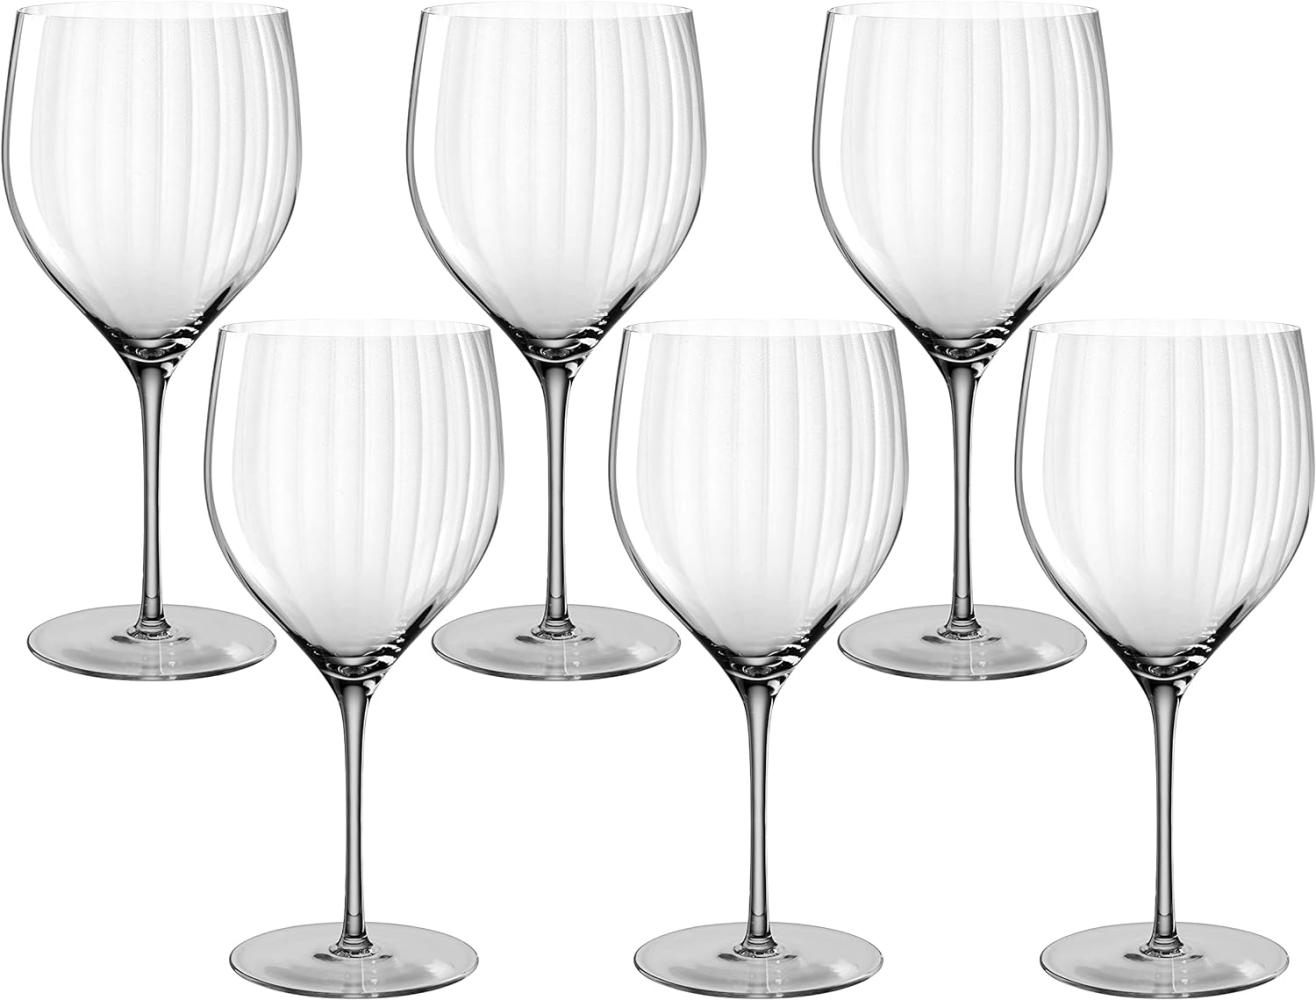 Leonardo Poesia Cocktailglas 6er Set, spülmaschinengeeignete Getränkegläser für Mixgetränke, Höhe 23 cm, 750 ml, grau, 022382 Bild 1